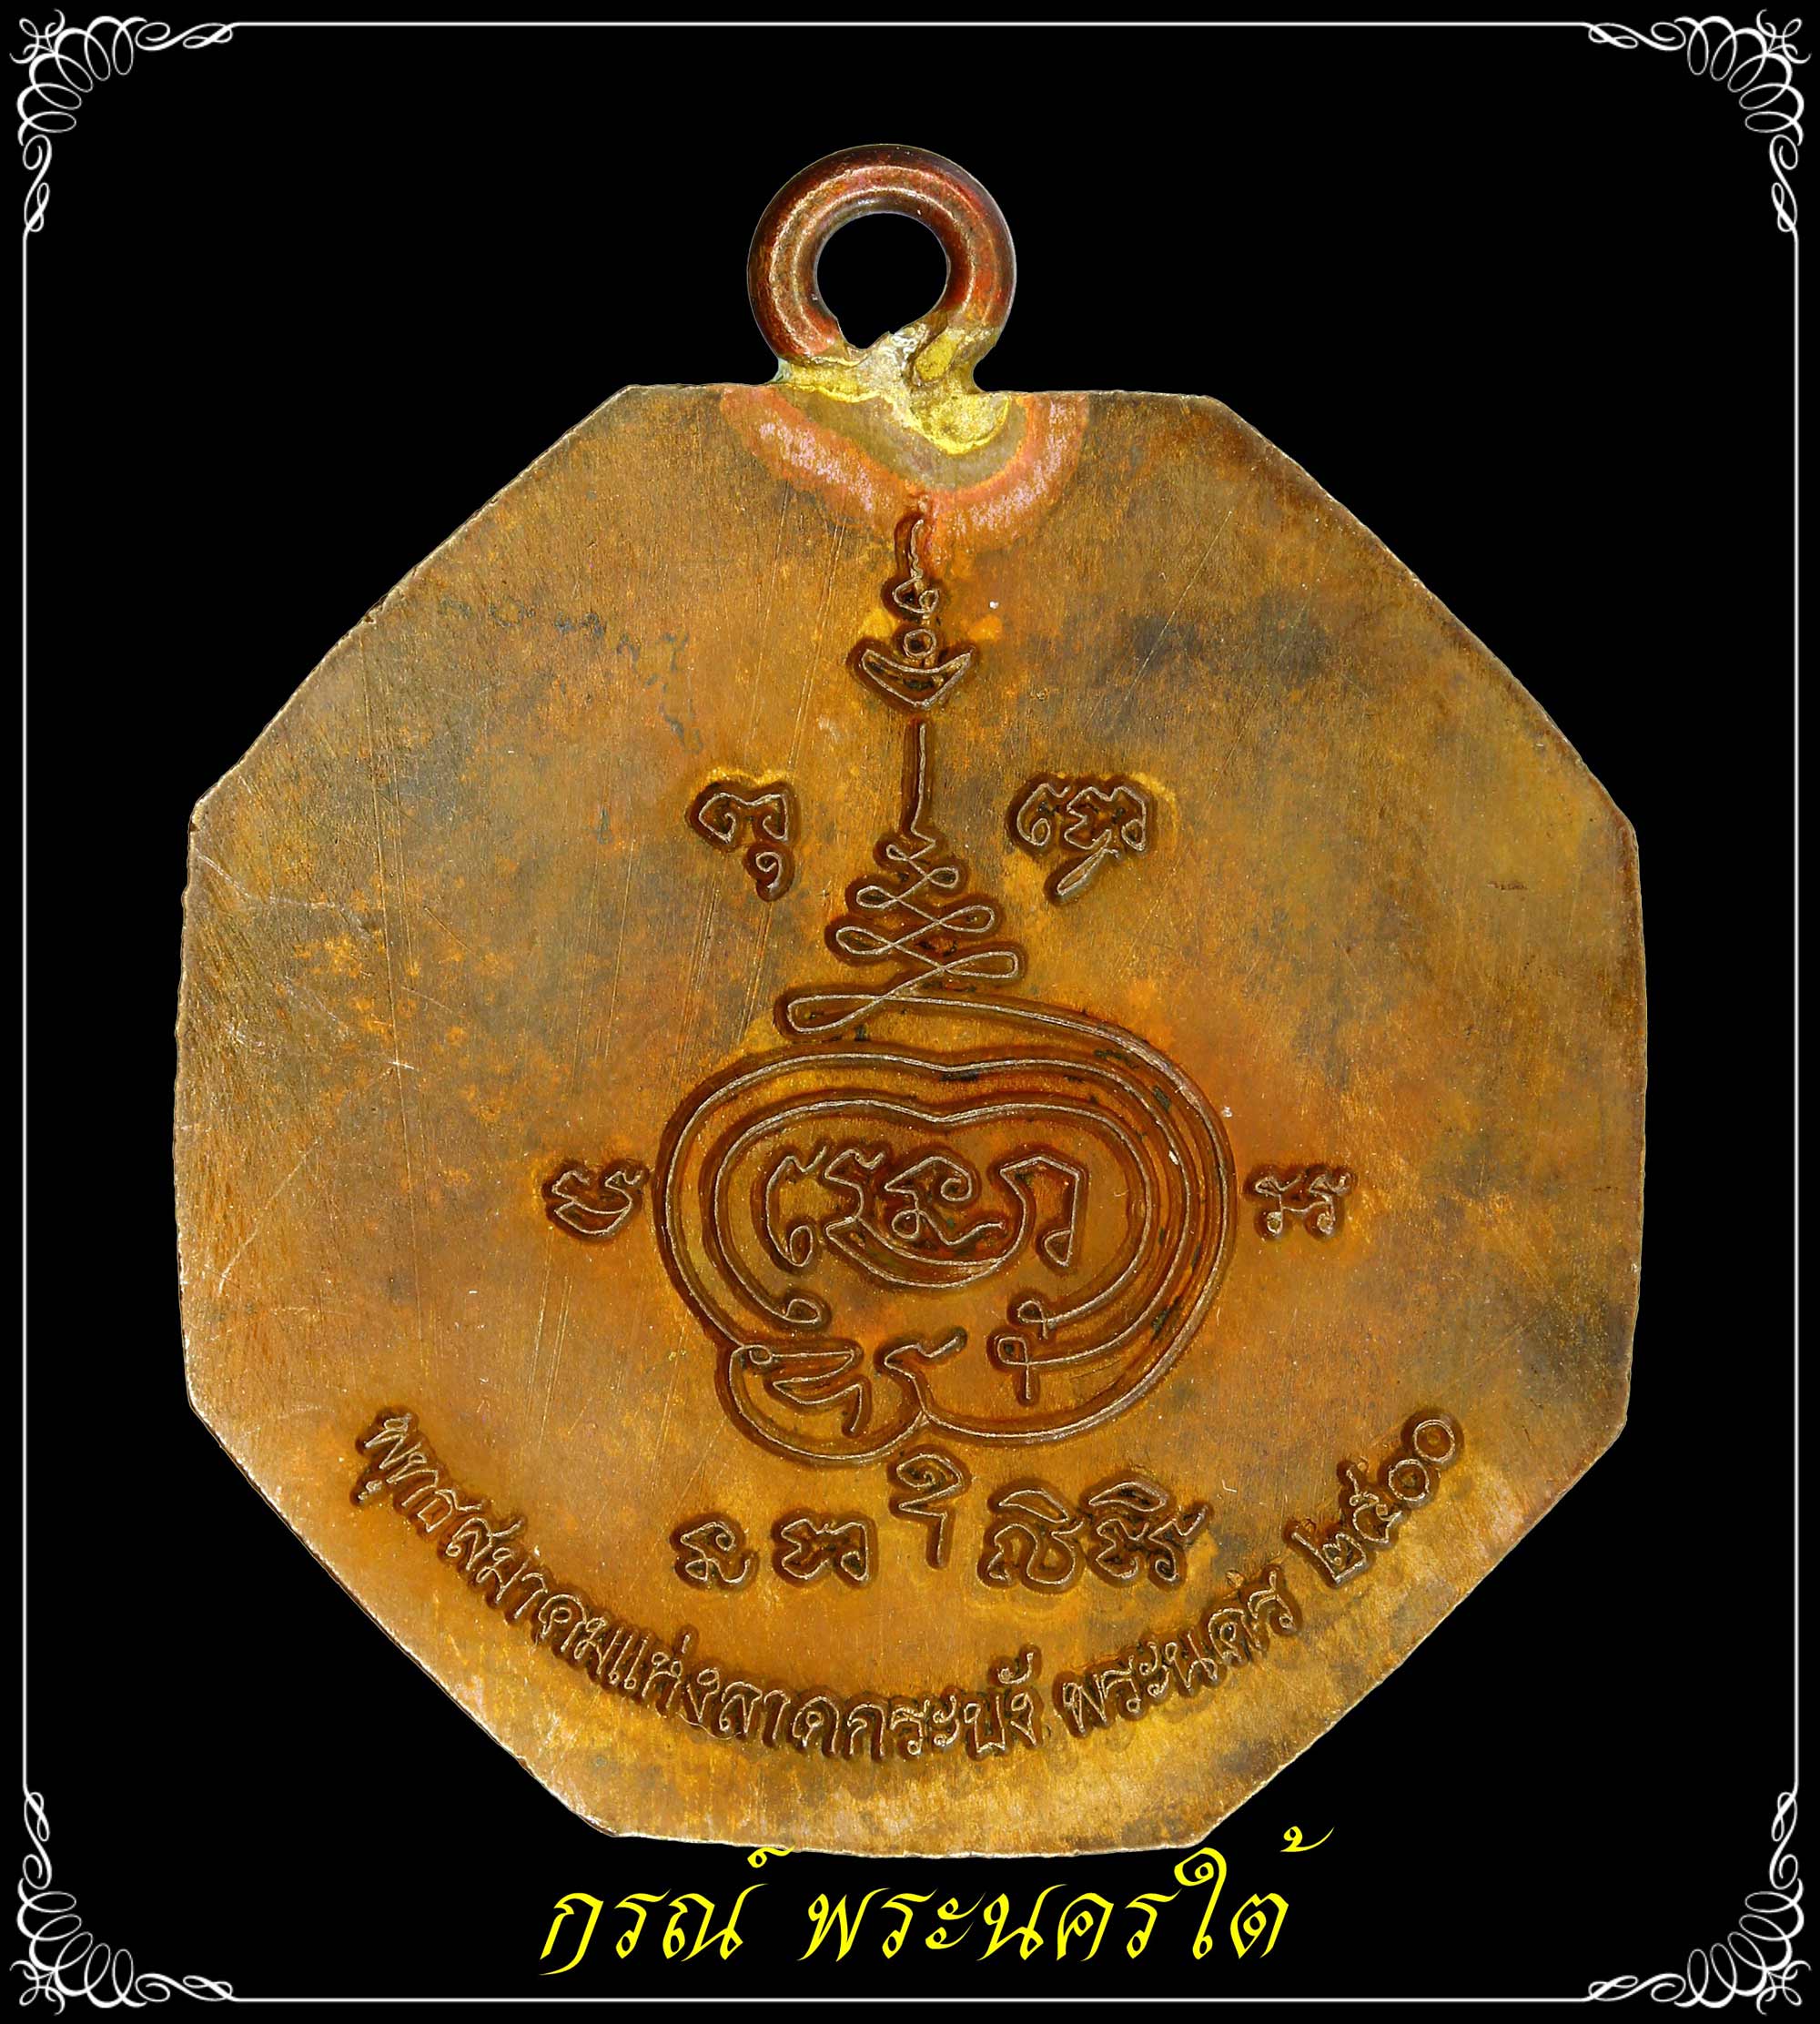 เหรียญแปดเหลี่ยม เซียนแปะโค้ว หัวตะเข้ รุ่น 2 เนื้อทองแดง ปี 2500 หลวงปู่เผือกวัดกิ่งแก้วปลุกเสก